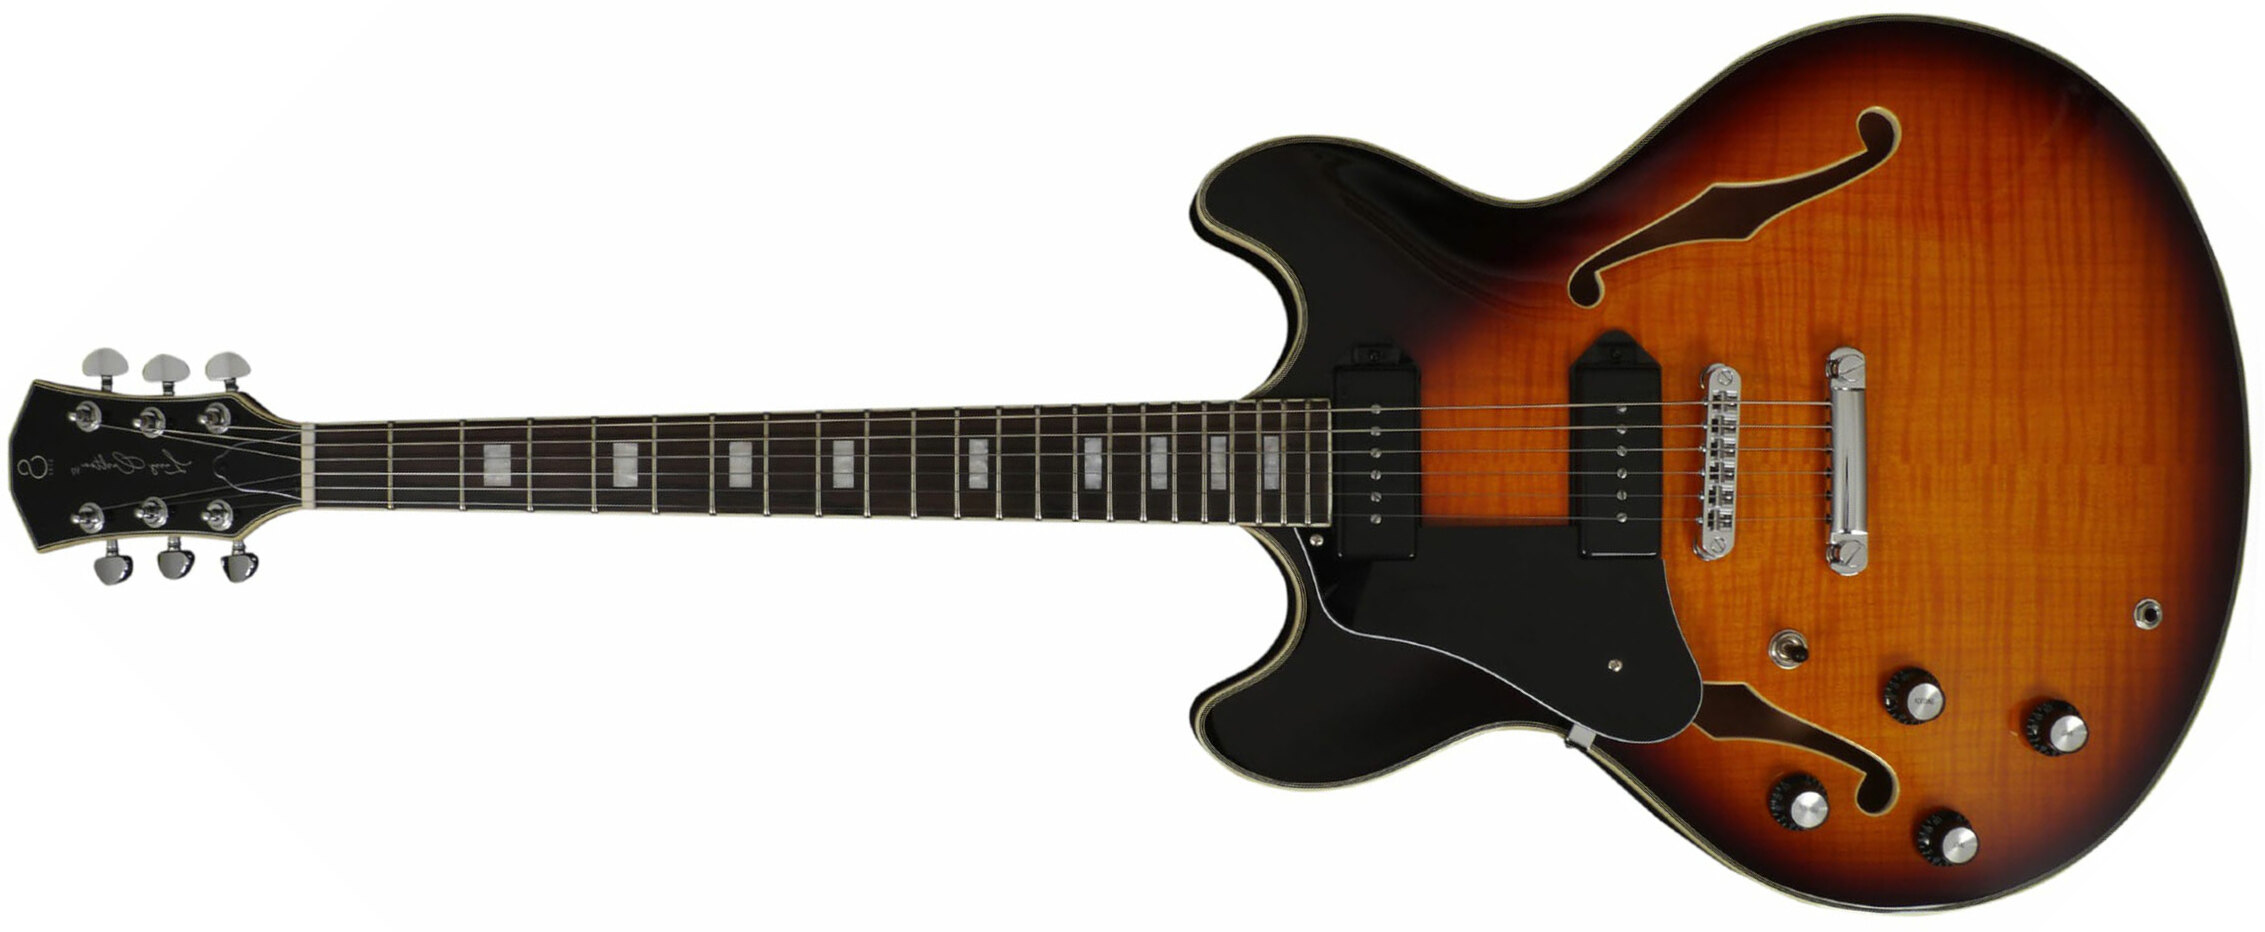 Sire Larry Carlton H7v Lh Signature Gaucher 2s P90 Ht Eb - Vintage Sunburst - Linkshandige elektrische gitaar - Main picture